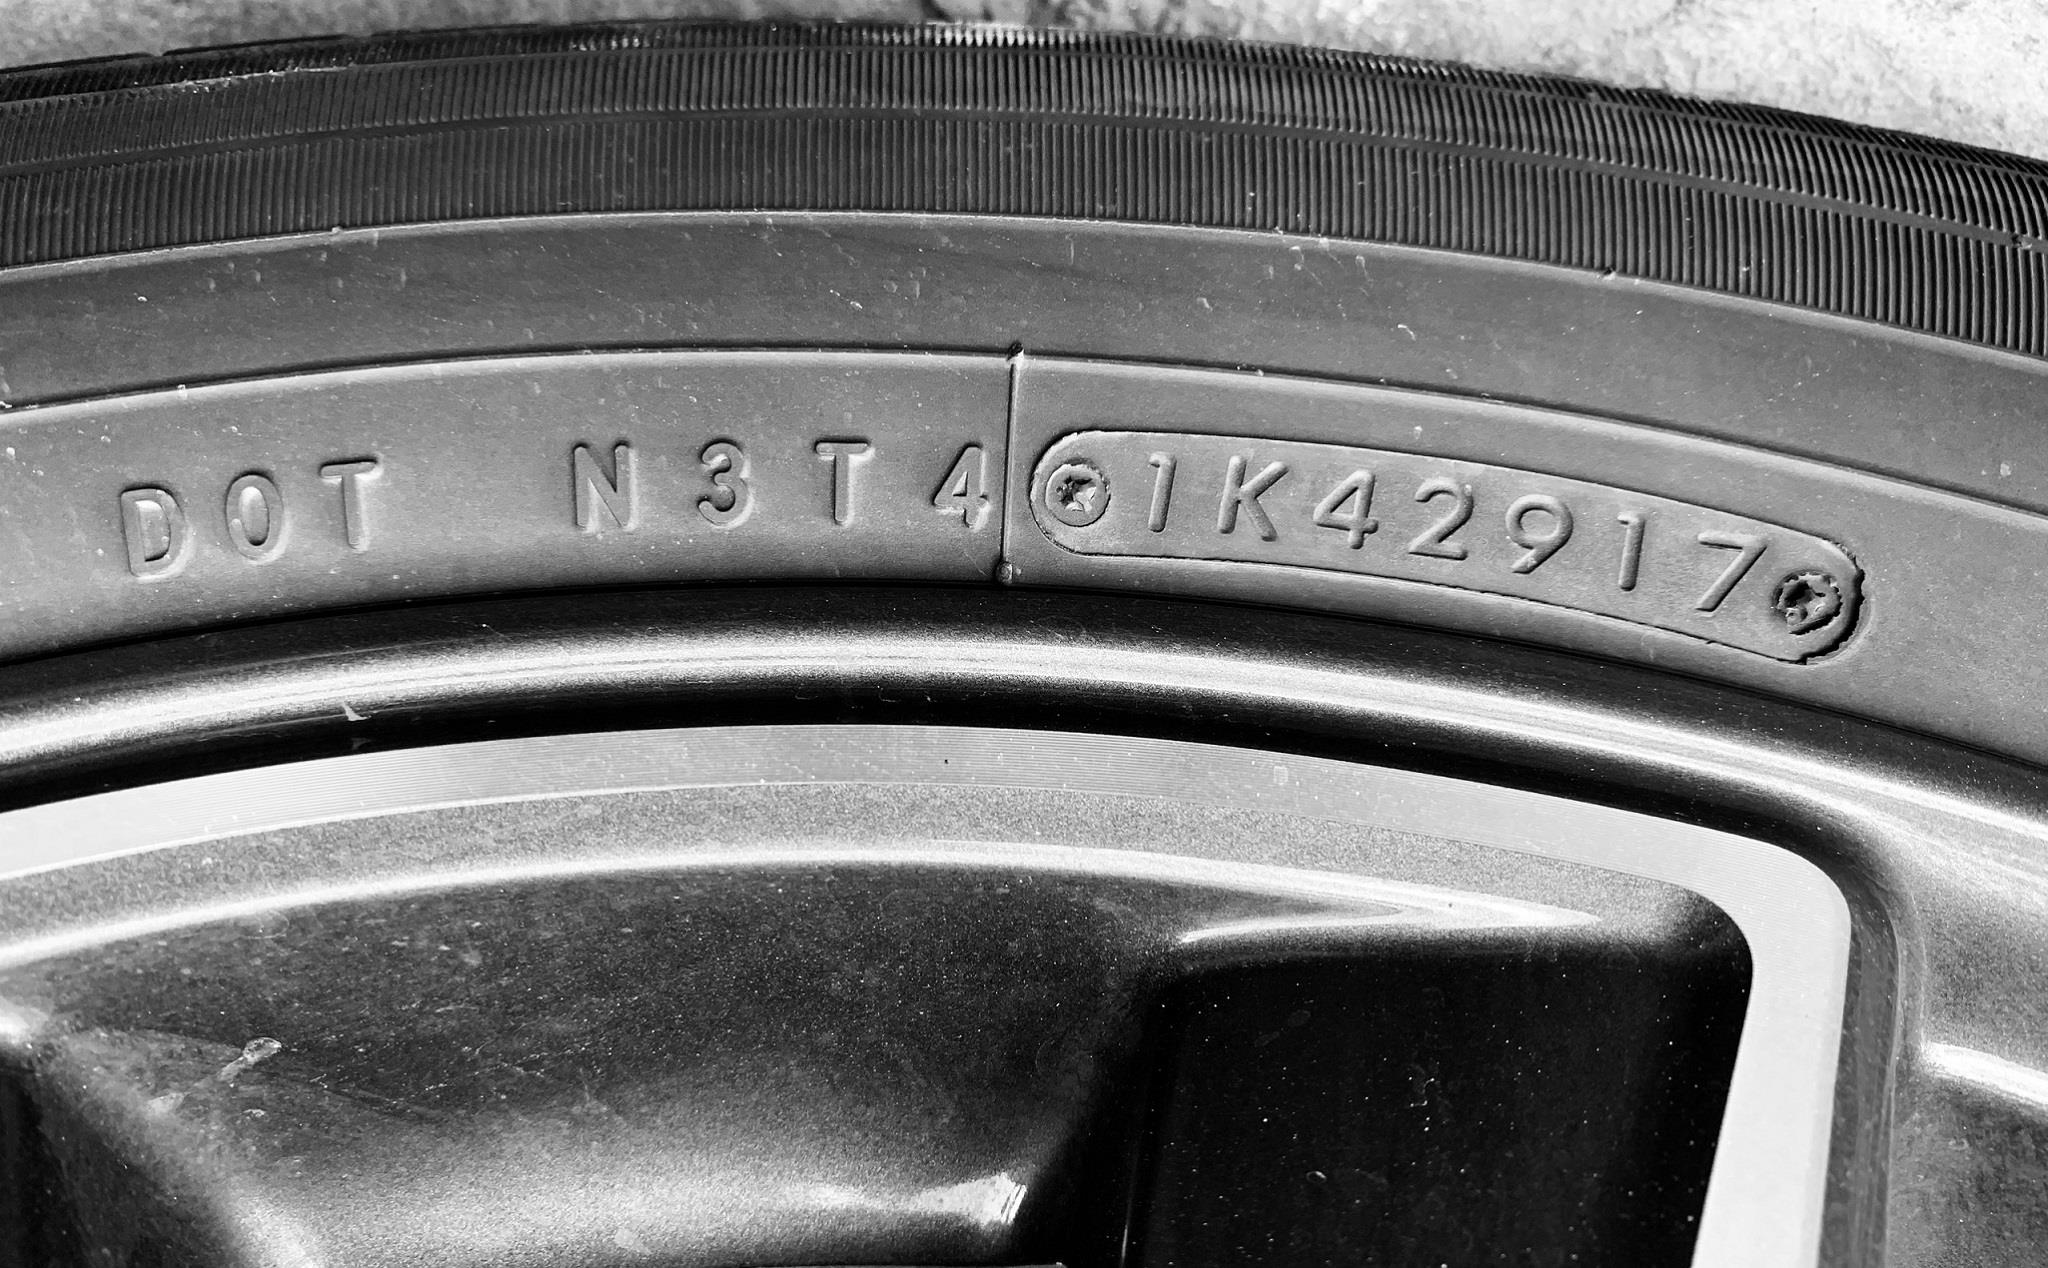 Cách đọc các thông số in trên lốp xe: Kích thước, tải trọng, tốc độ tối đa, ngày sản xuất...